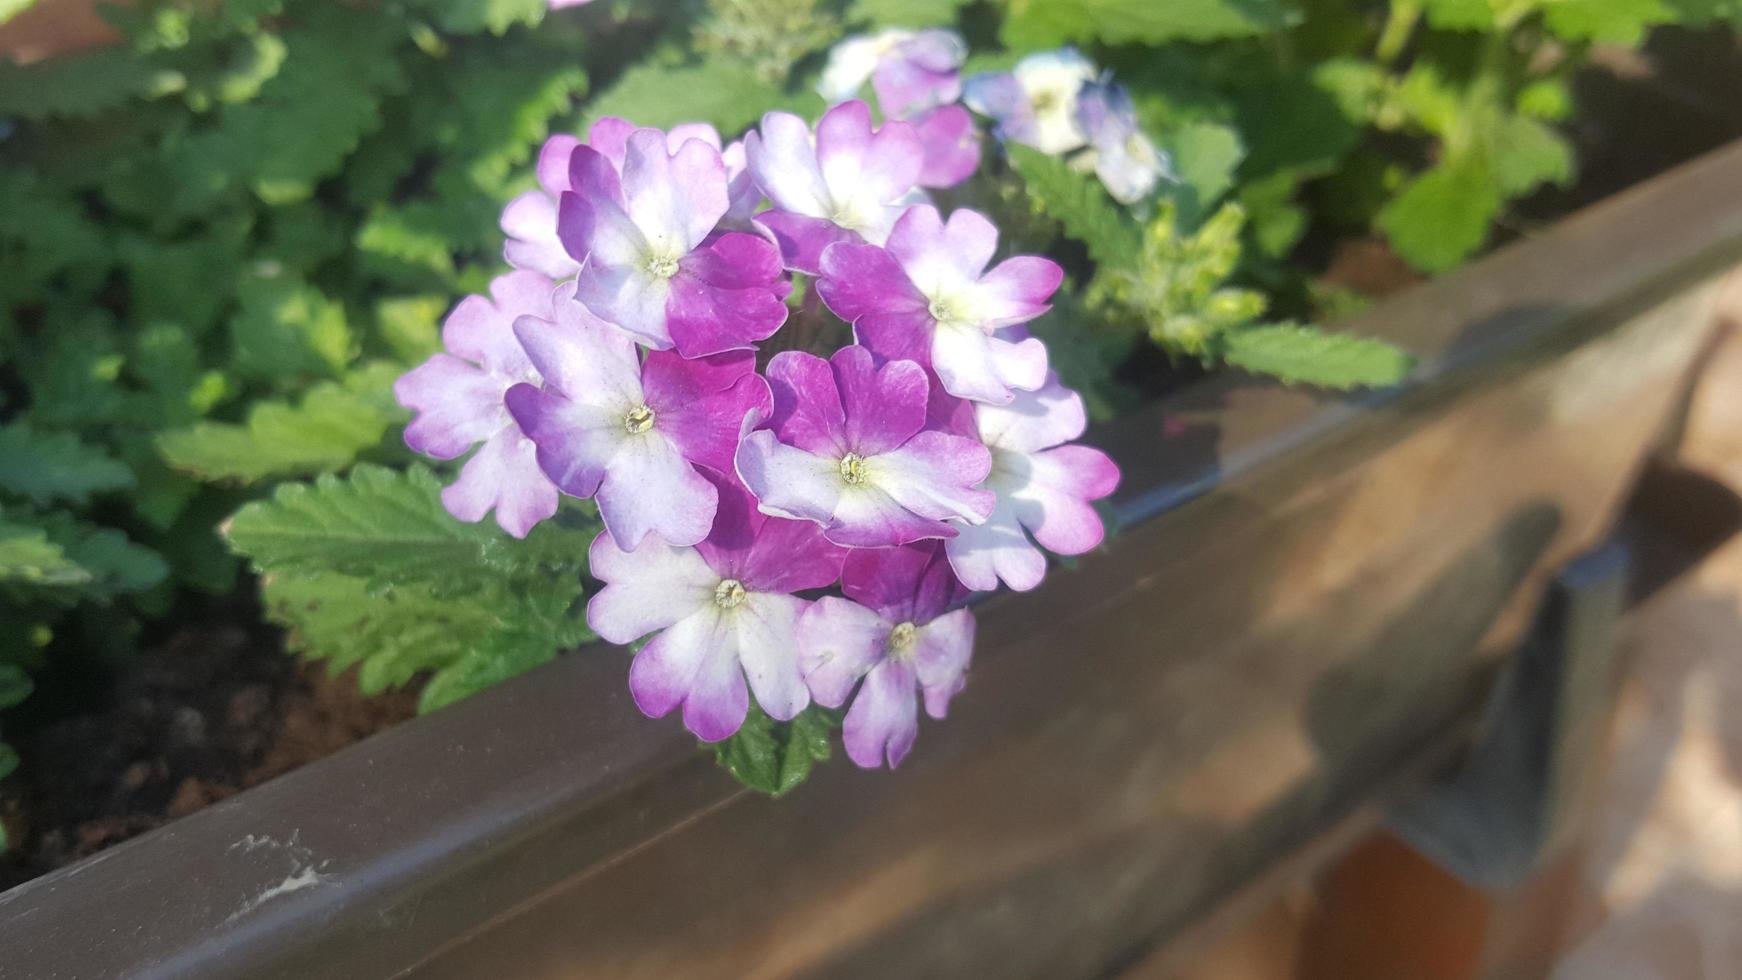 Violet little flower in the garden photo